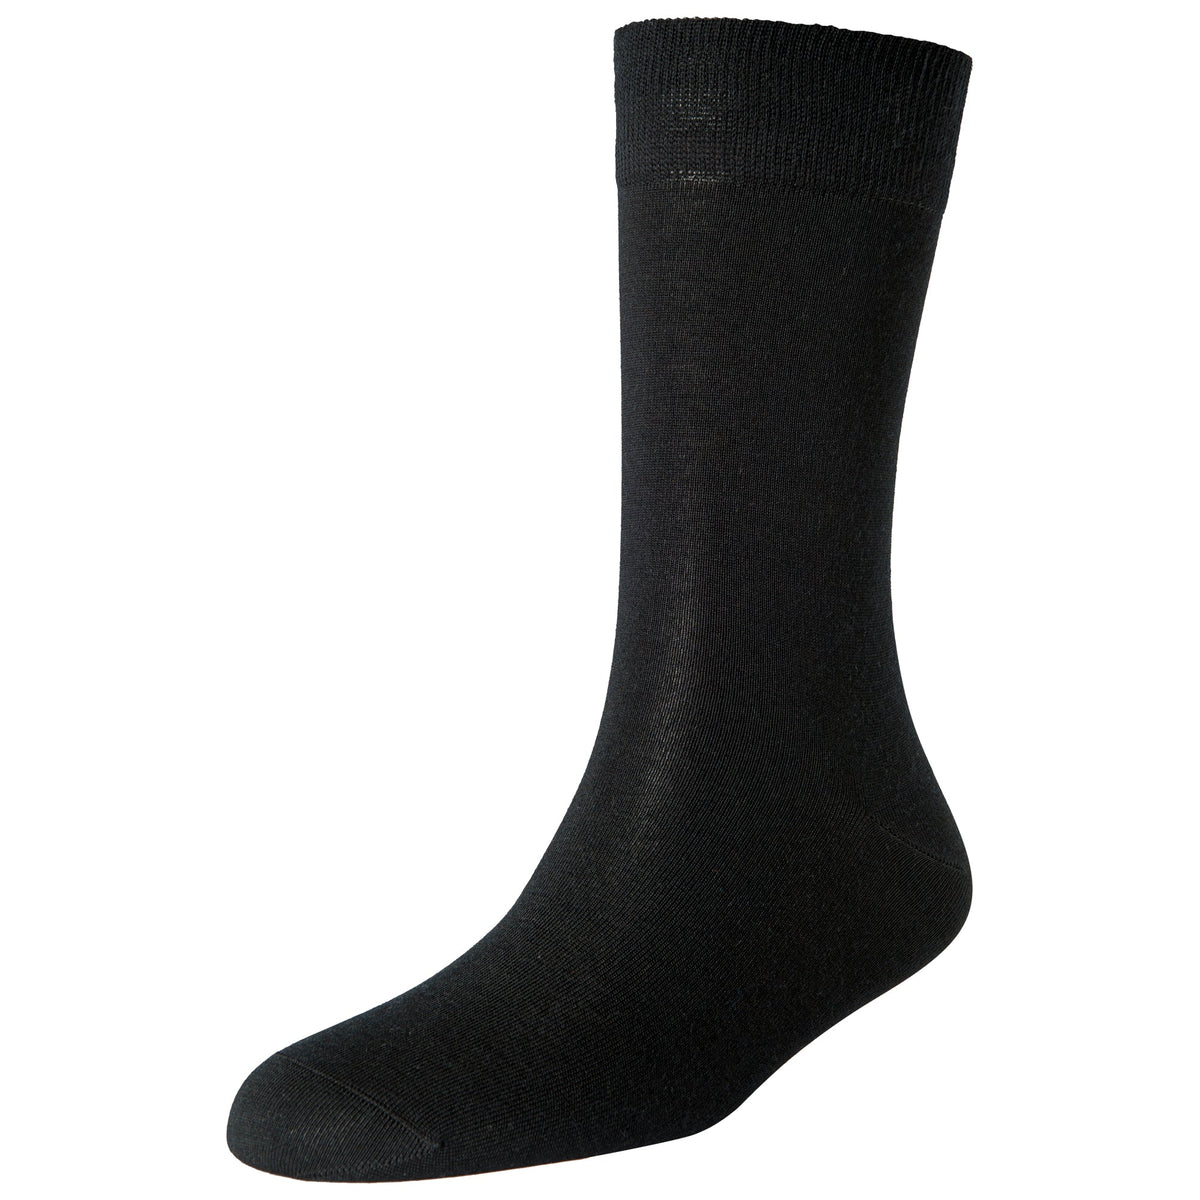 Men's Merino Wool Standard Length Socks